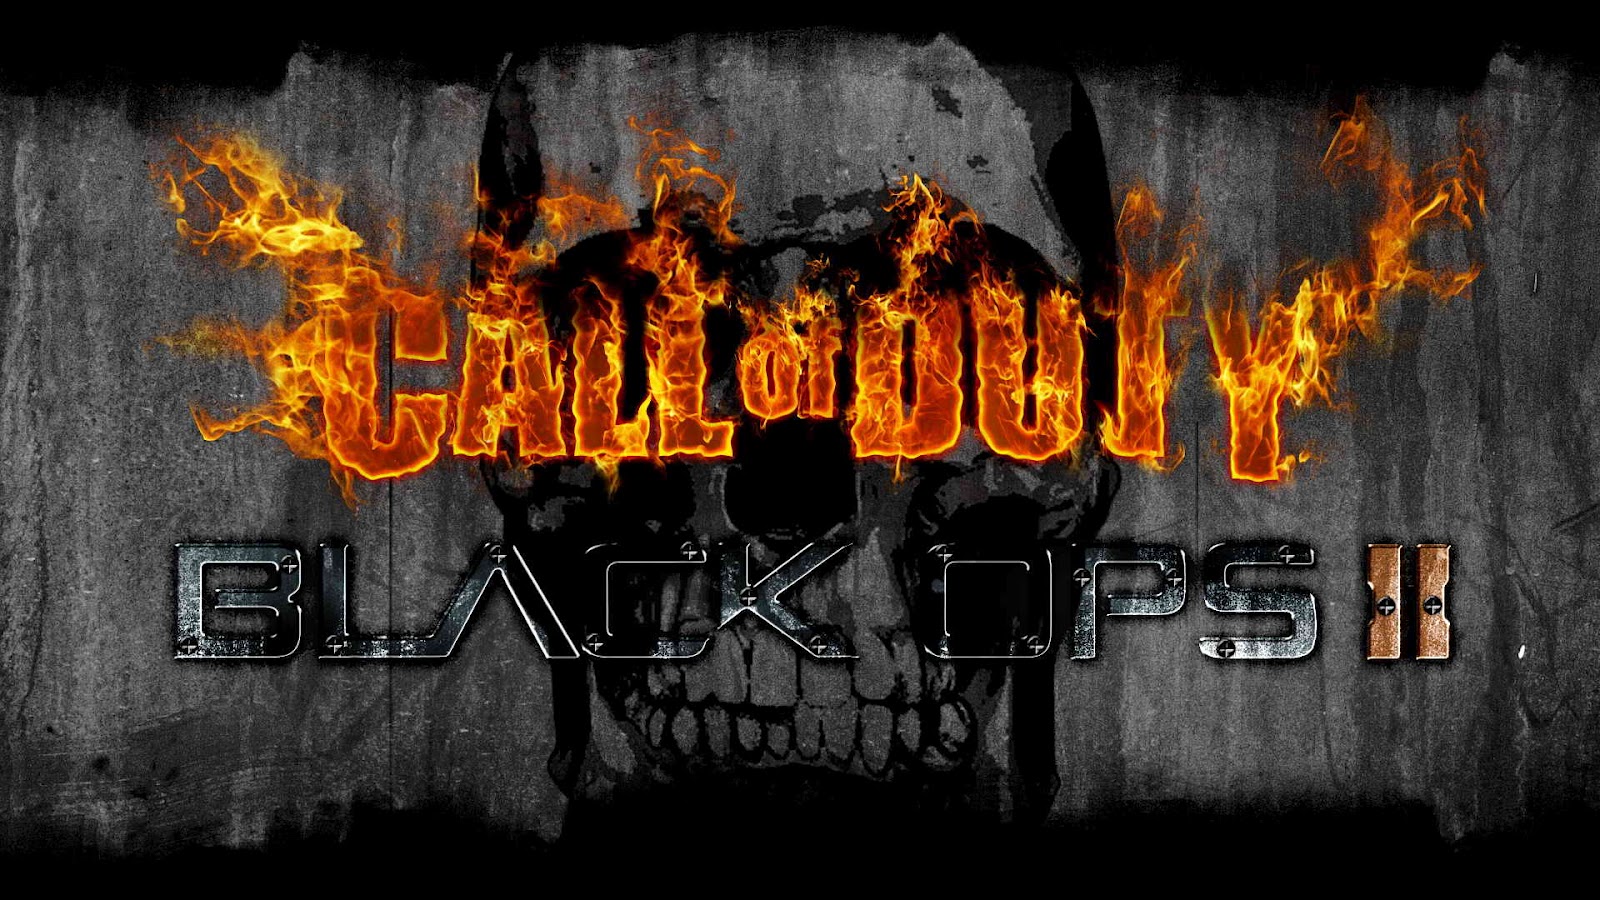 49+] Call of Duty Black Ops 2 Wallpaper - WallpaperSafari